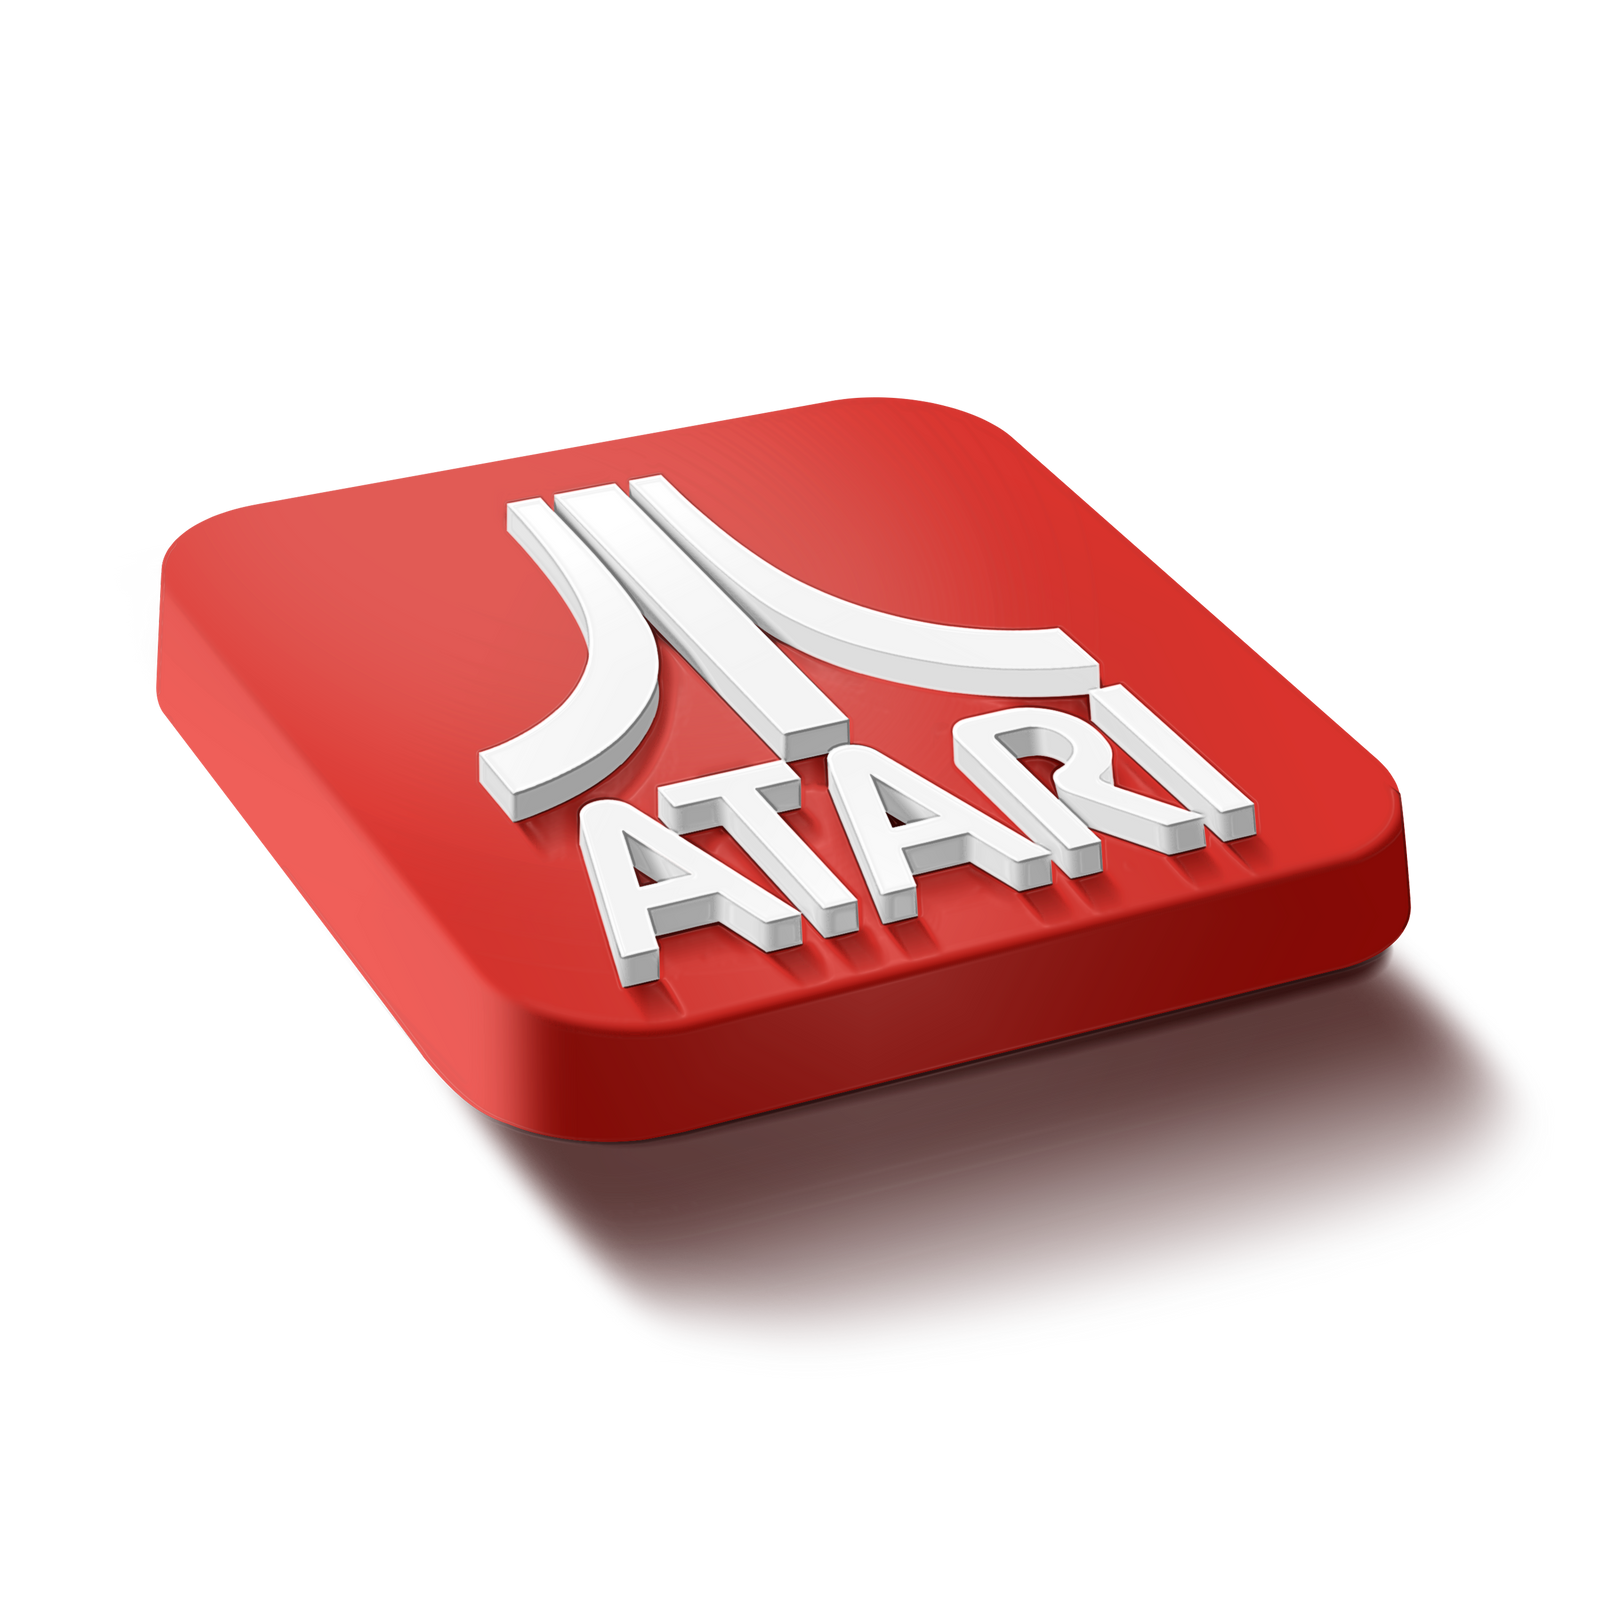 Atari logo.